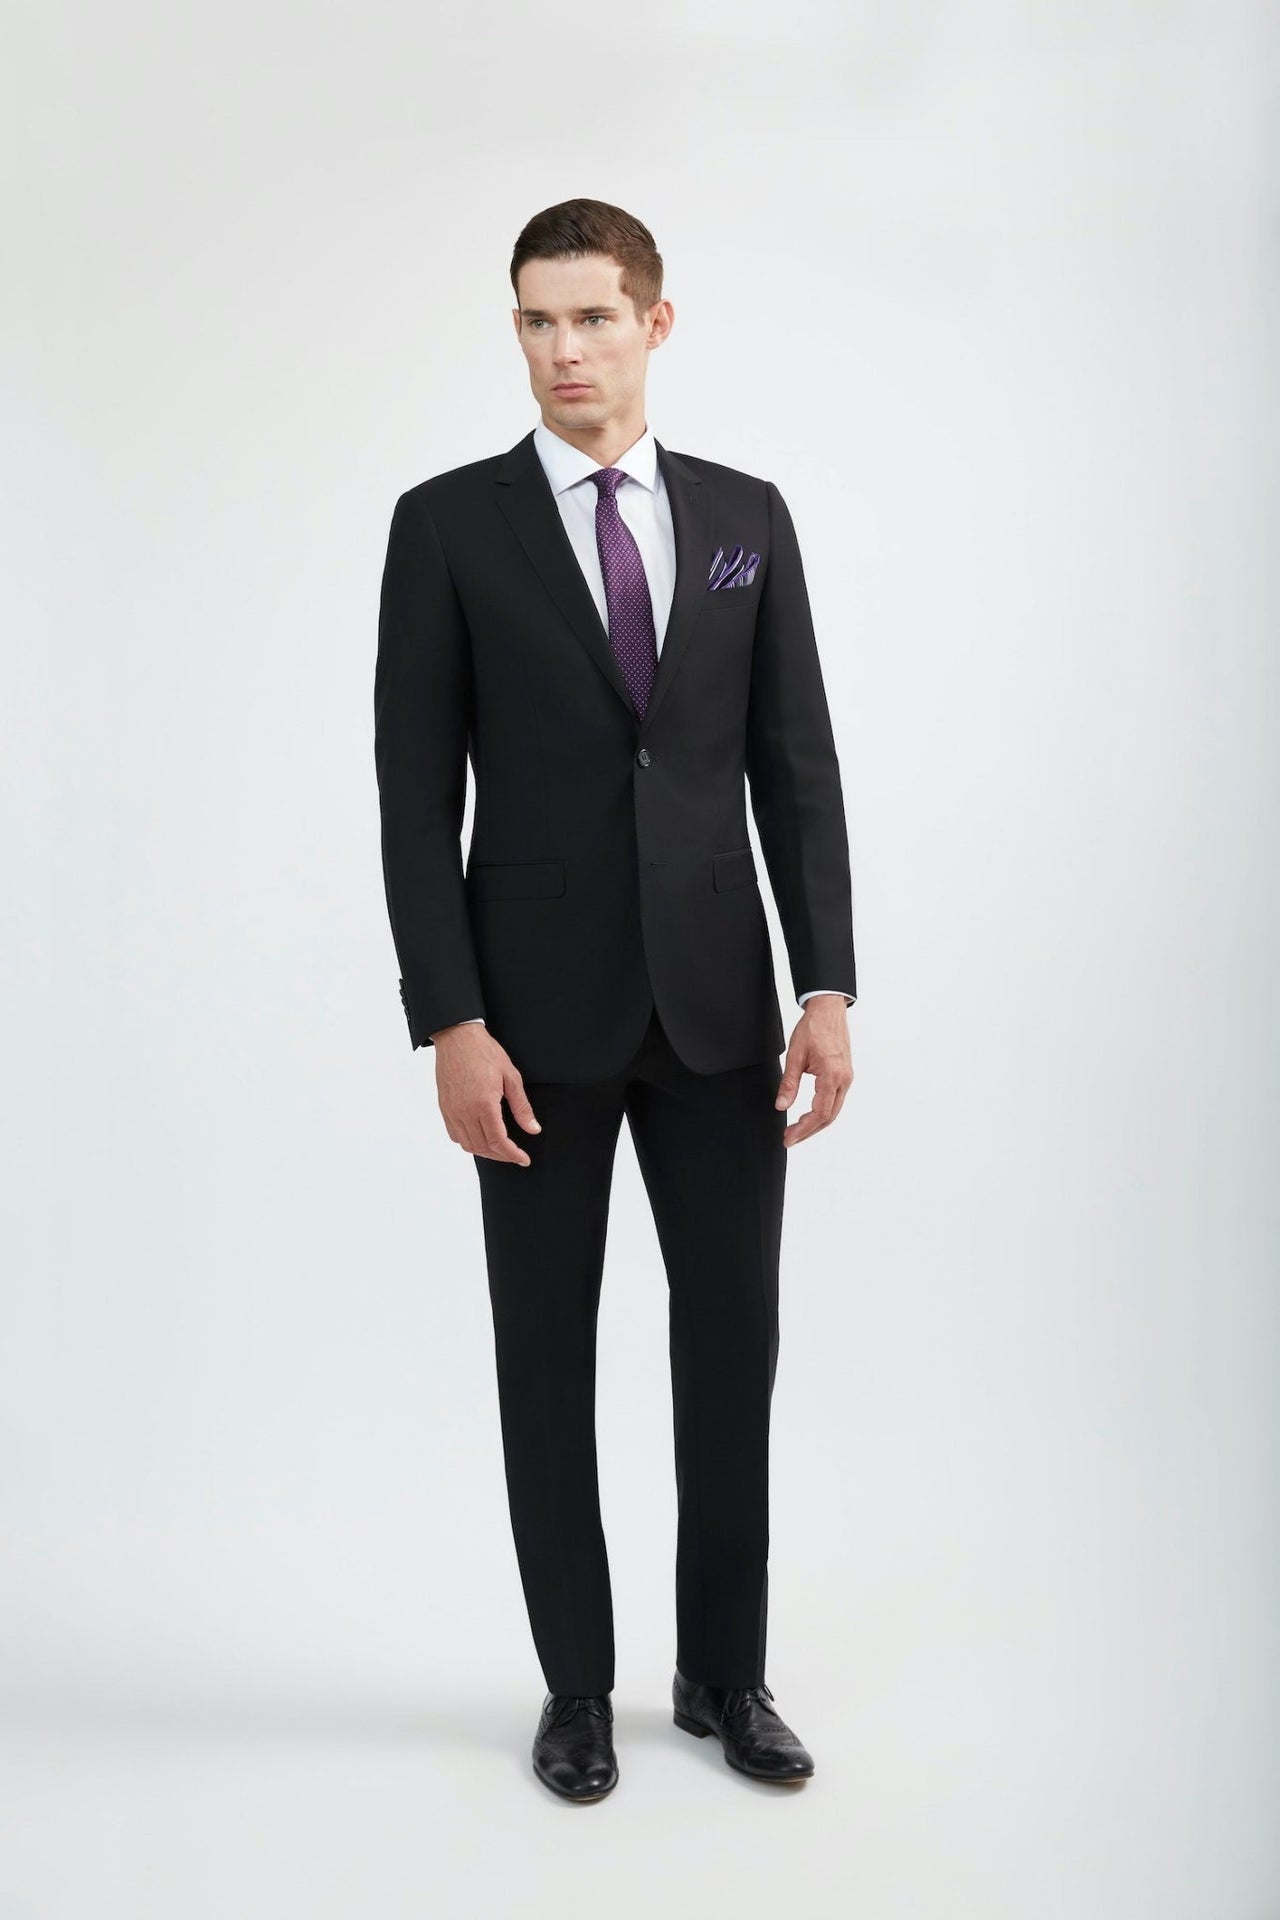 Elegant Black Formal Suits for Women